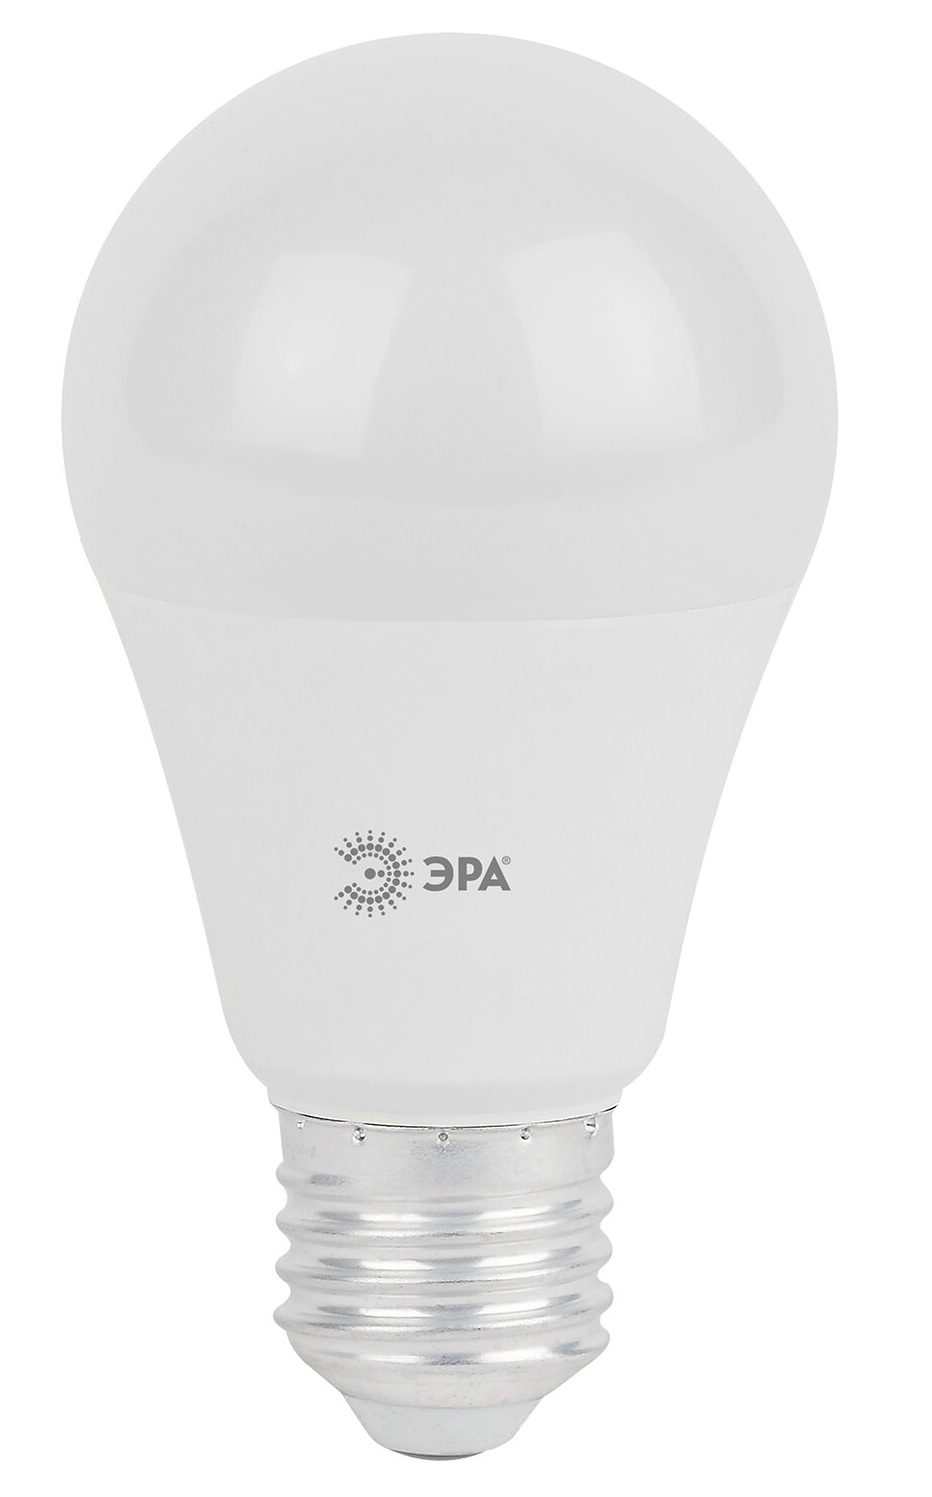 картинка Лампа светодиодная, цоколь Е27, груша, теплый белый, 25000 ч, LED, smdA65-21w-827-E27 от магазина Альфанит в Кунгуре